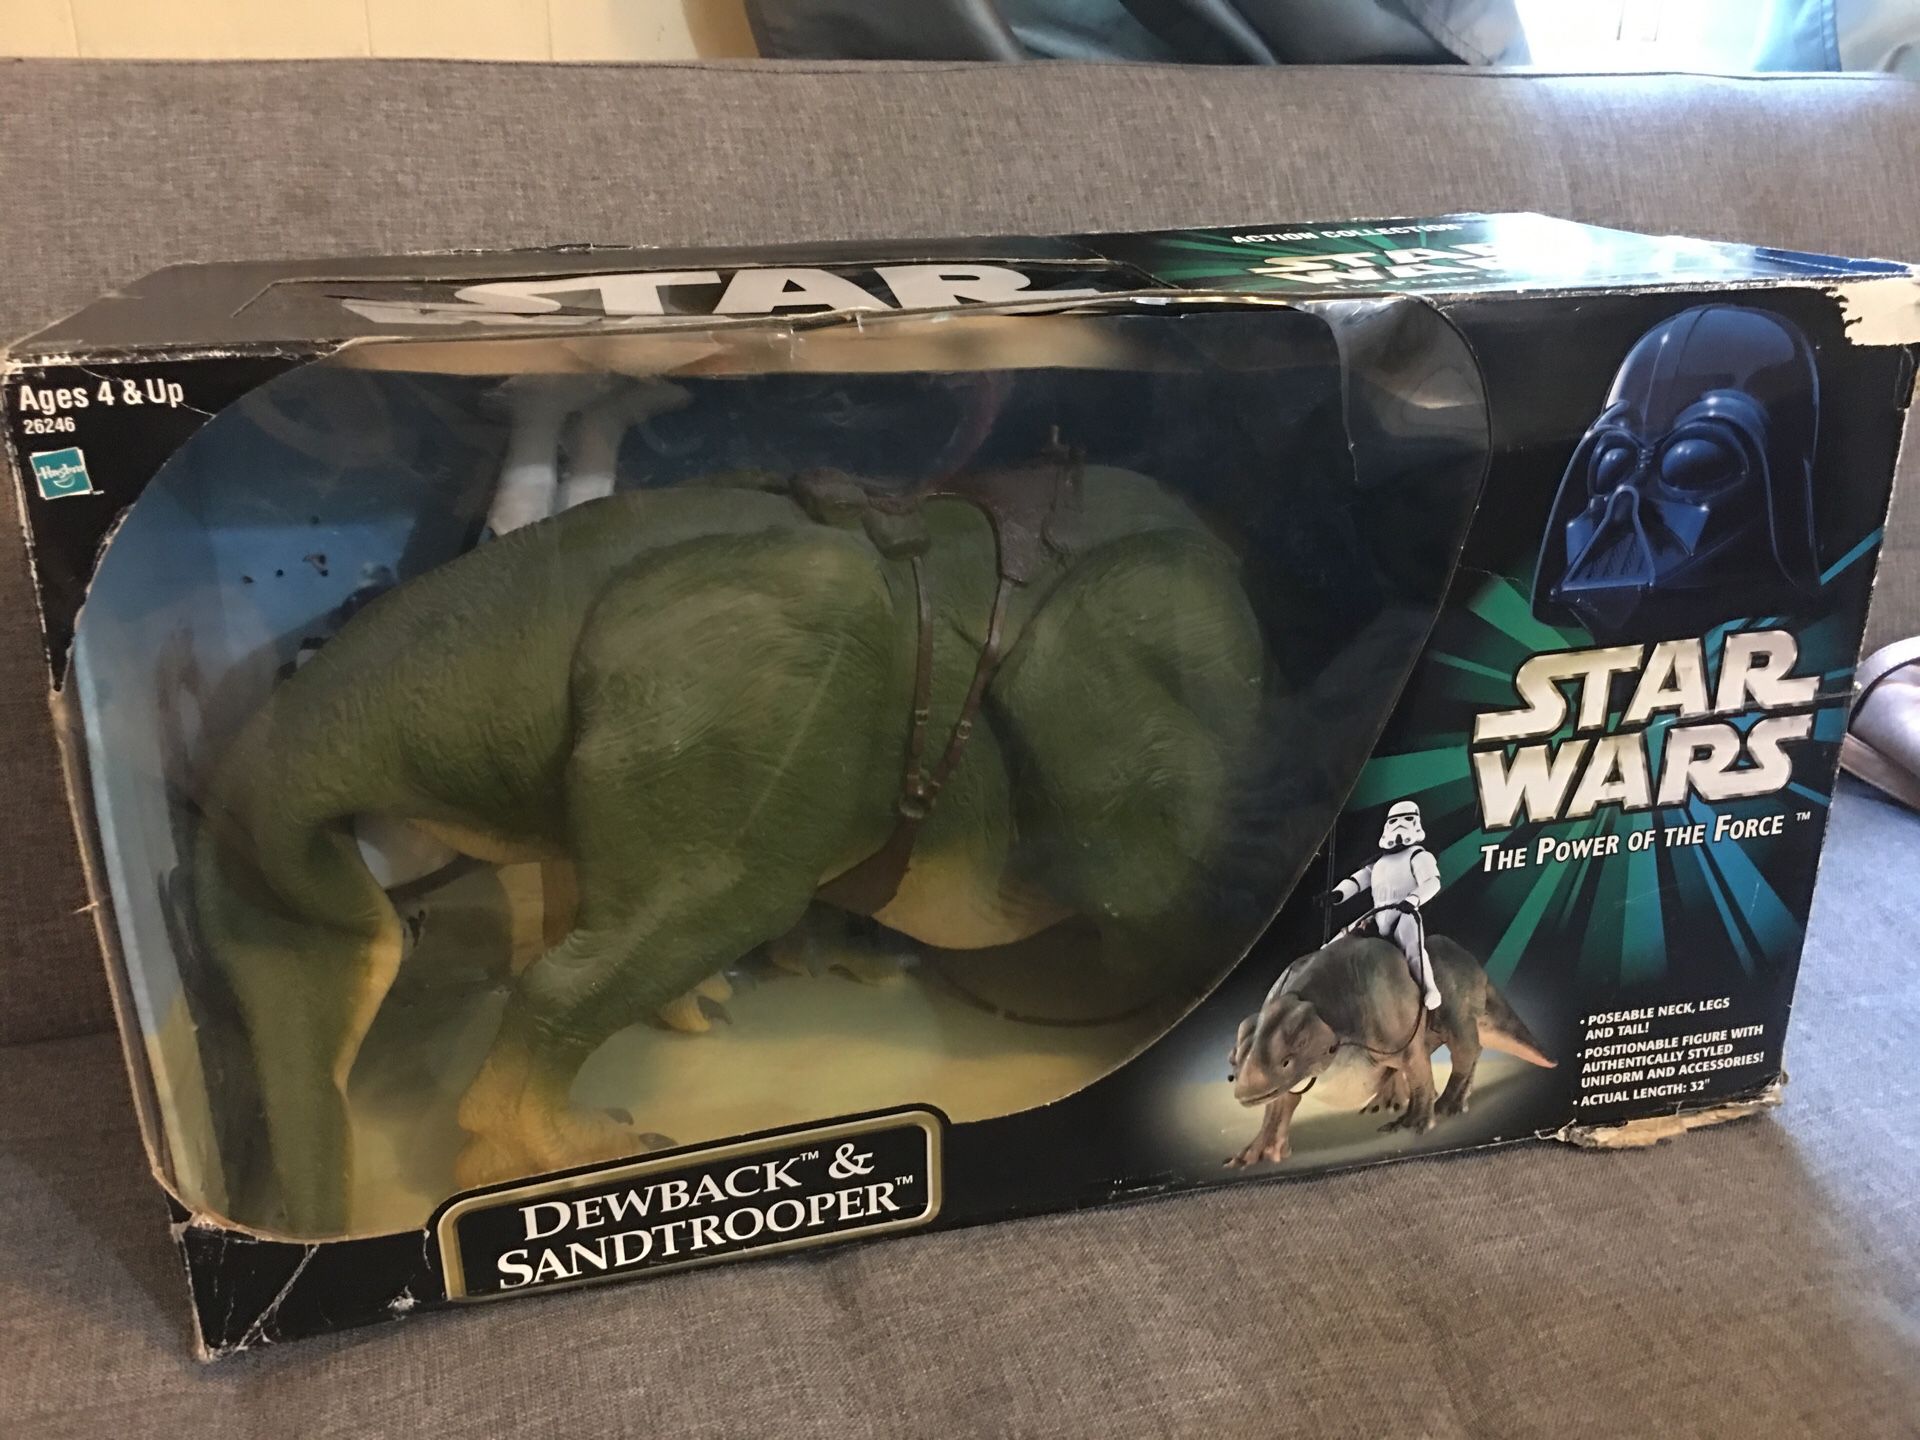 Star Wars Memorabilia action figures “Dewback & Stormtrooper” set